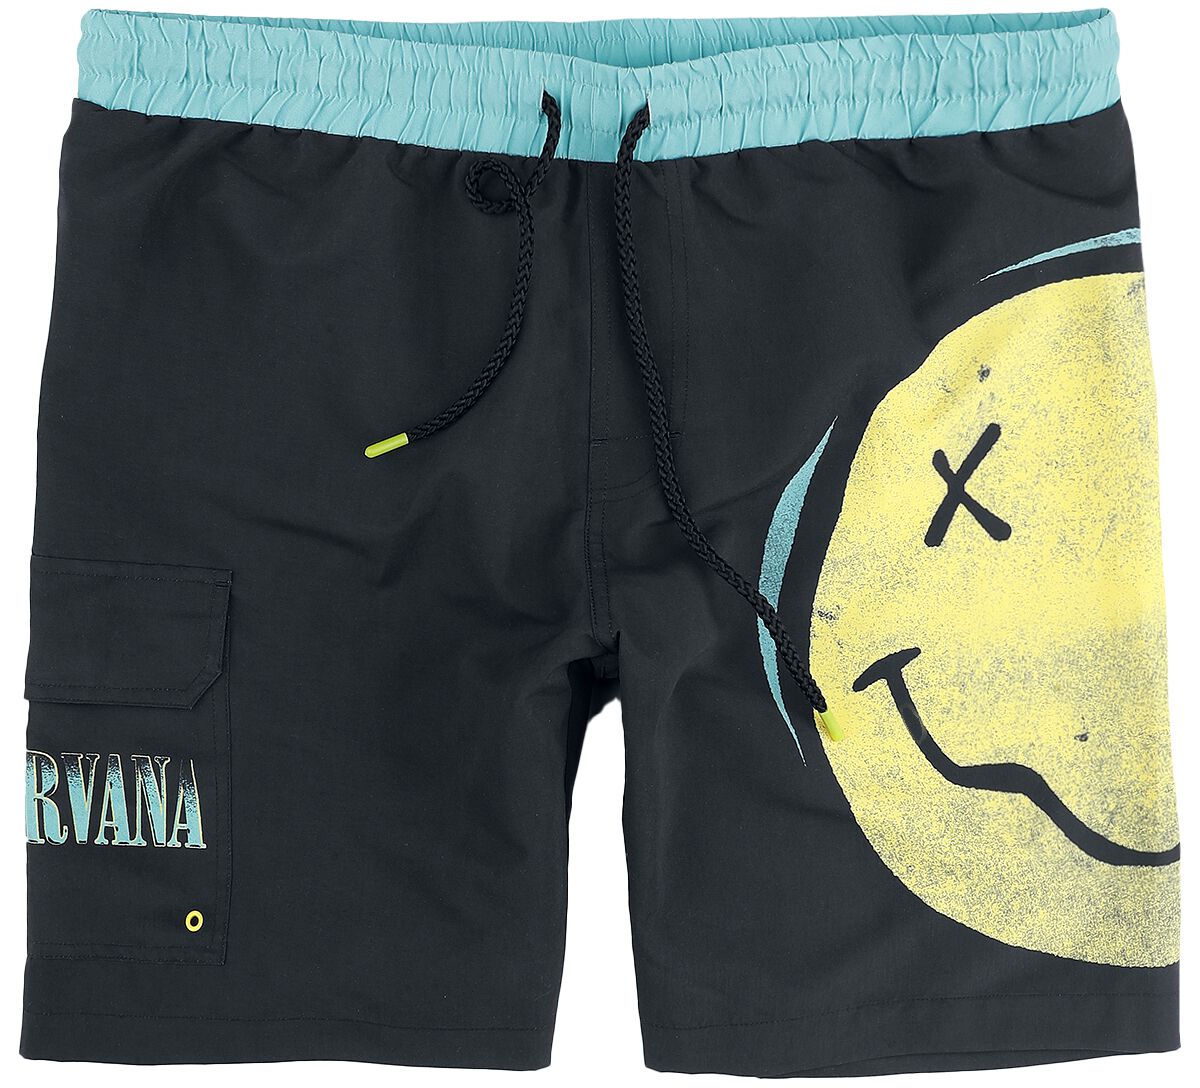 Nirvana Badeshort - EMP Signature Collection - L bis XXL - für Männer - Größe XL - multicolor  - EMP exklusives Merchandise!